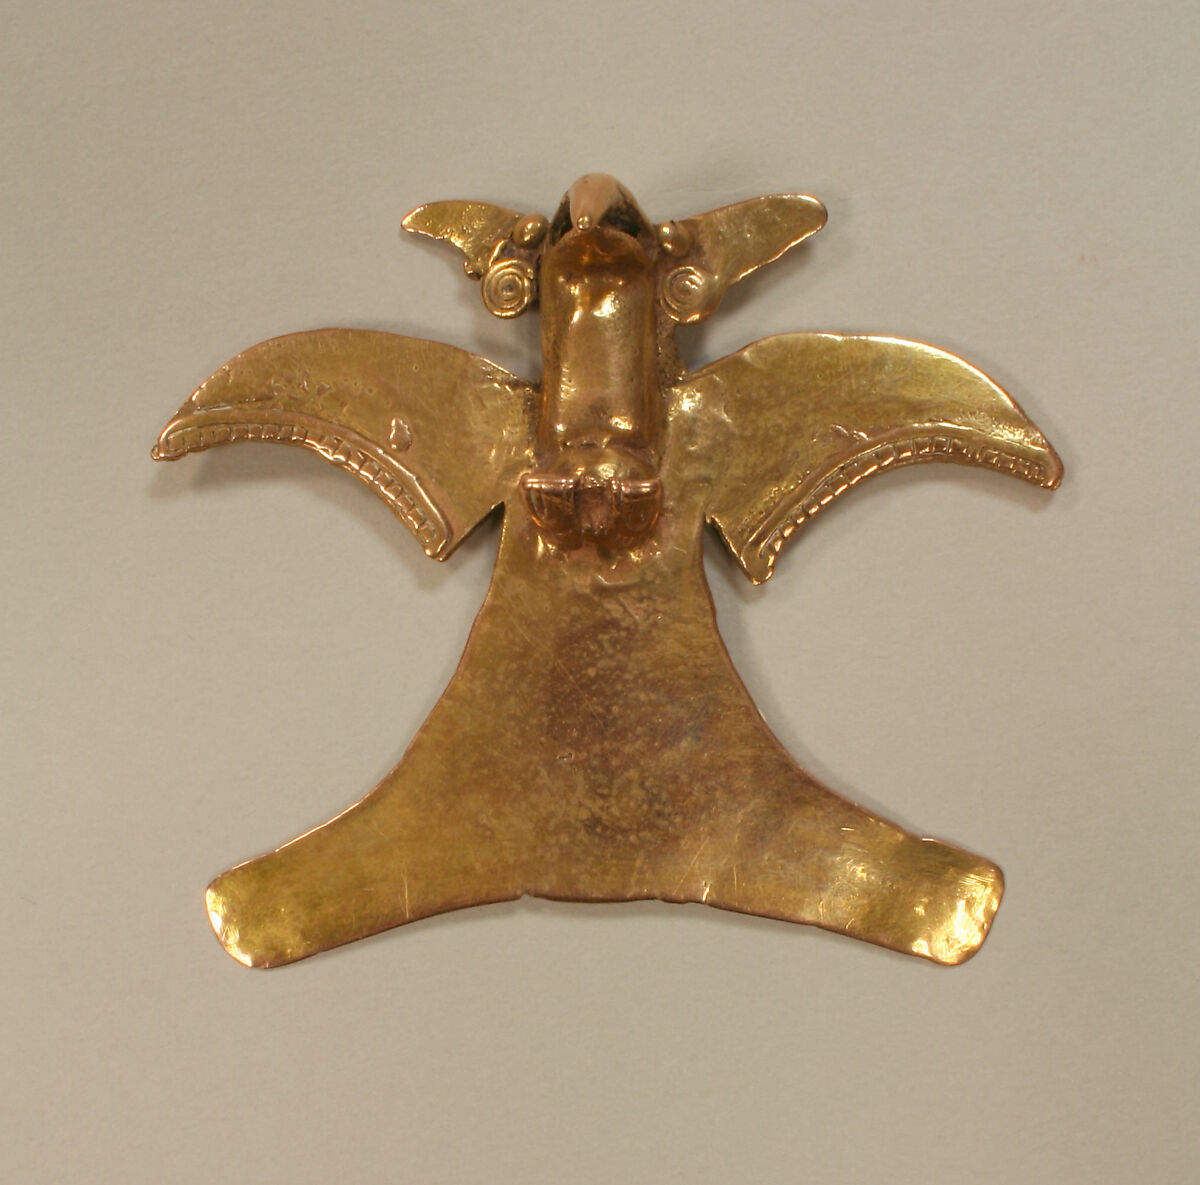 Eagle Pendant, Gold, Veraguas 